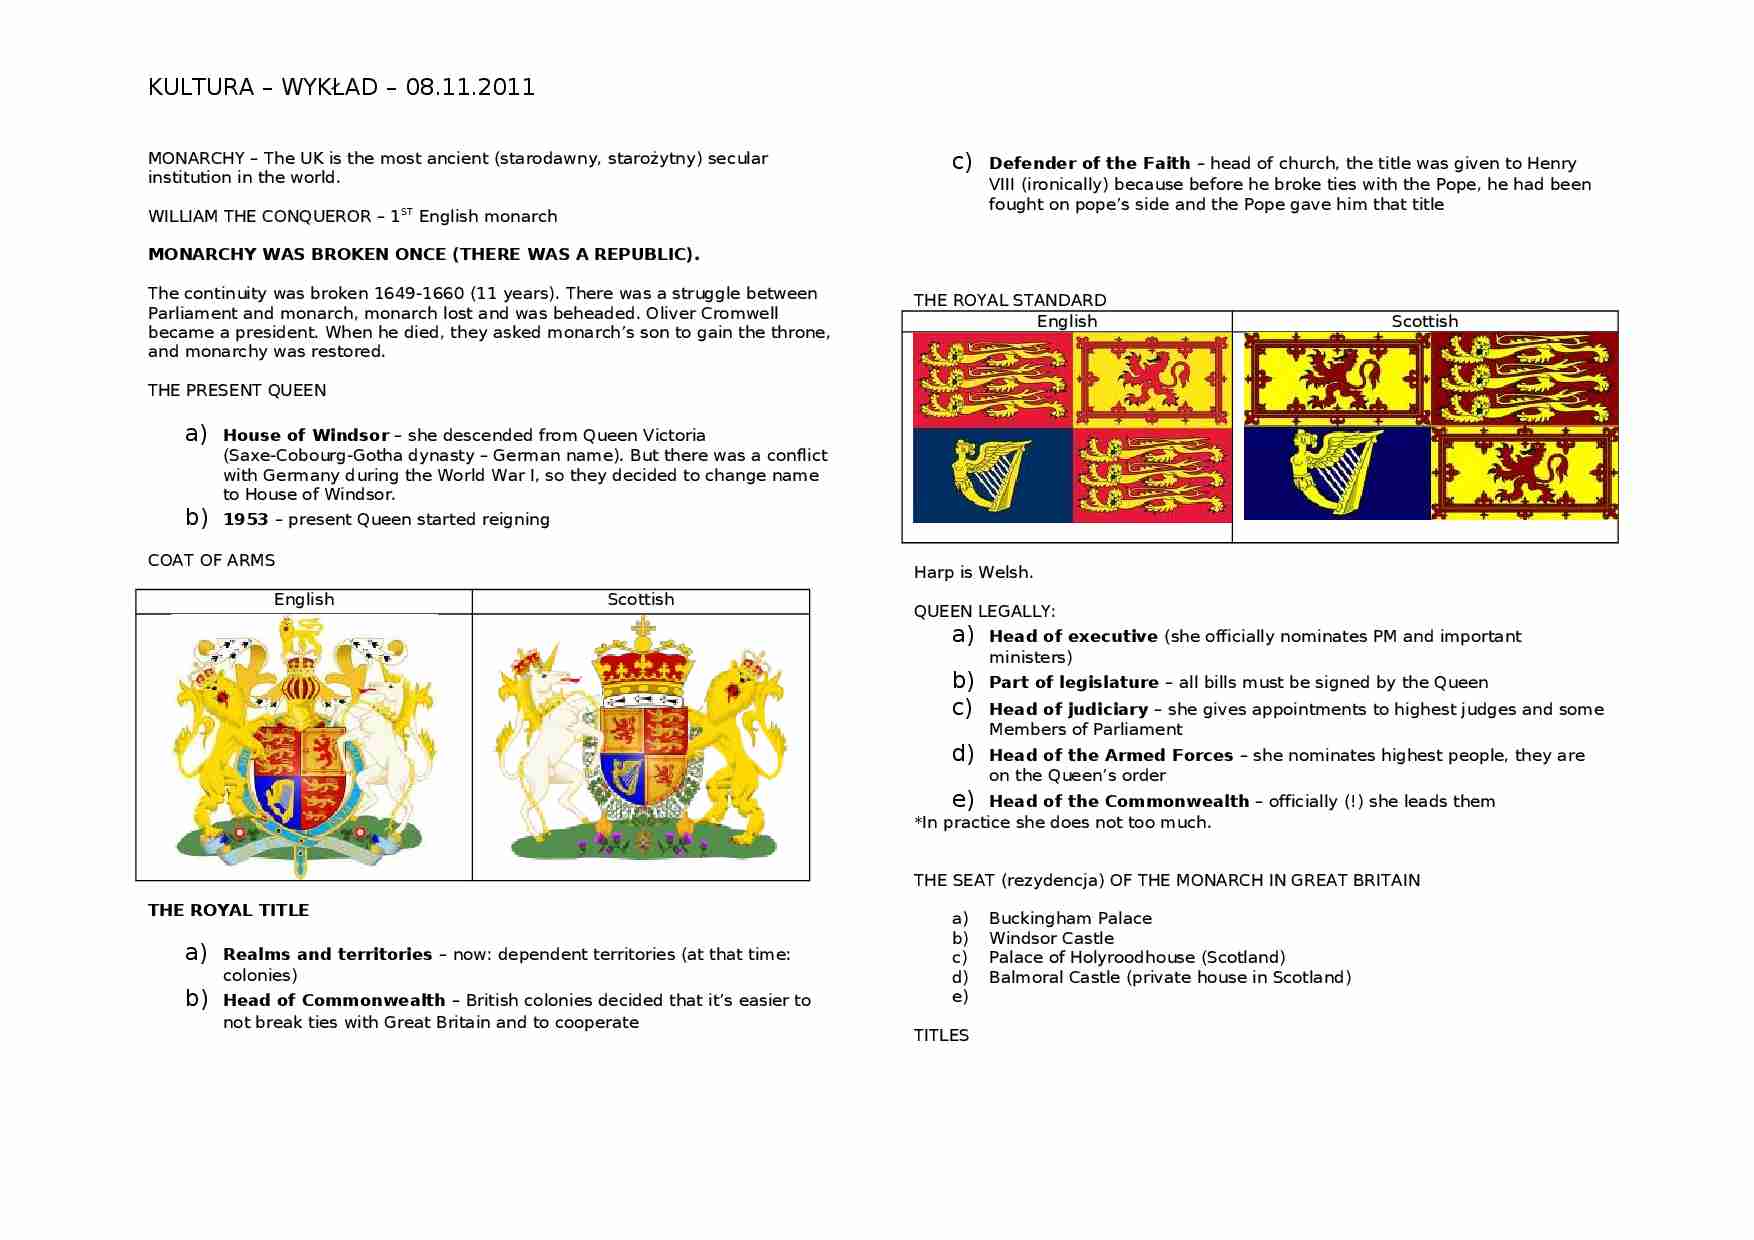 Wykład - monarchy of UK - strona 1